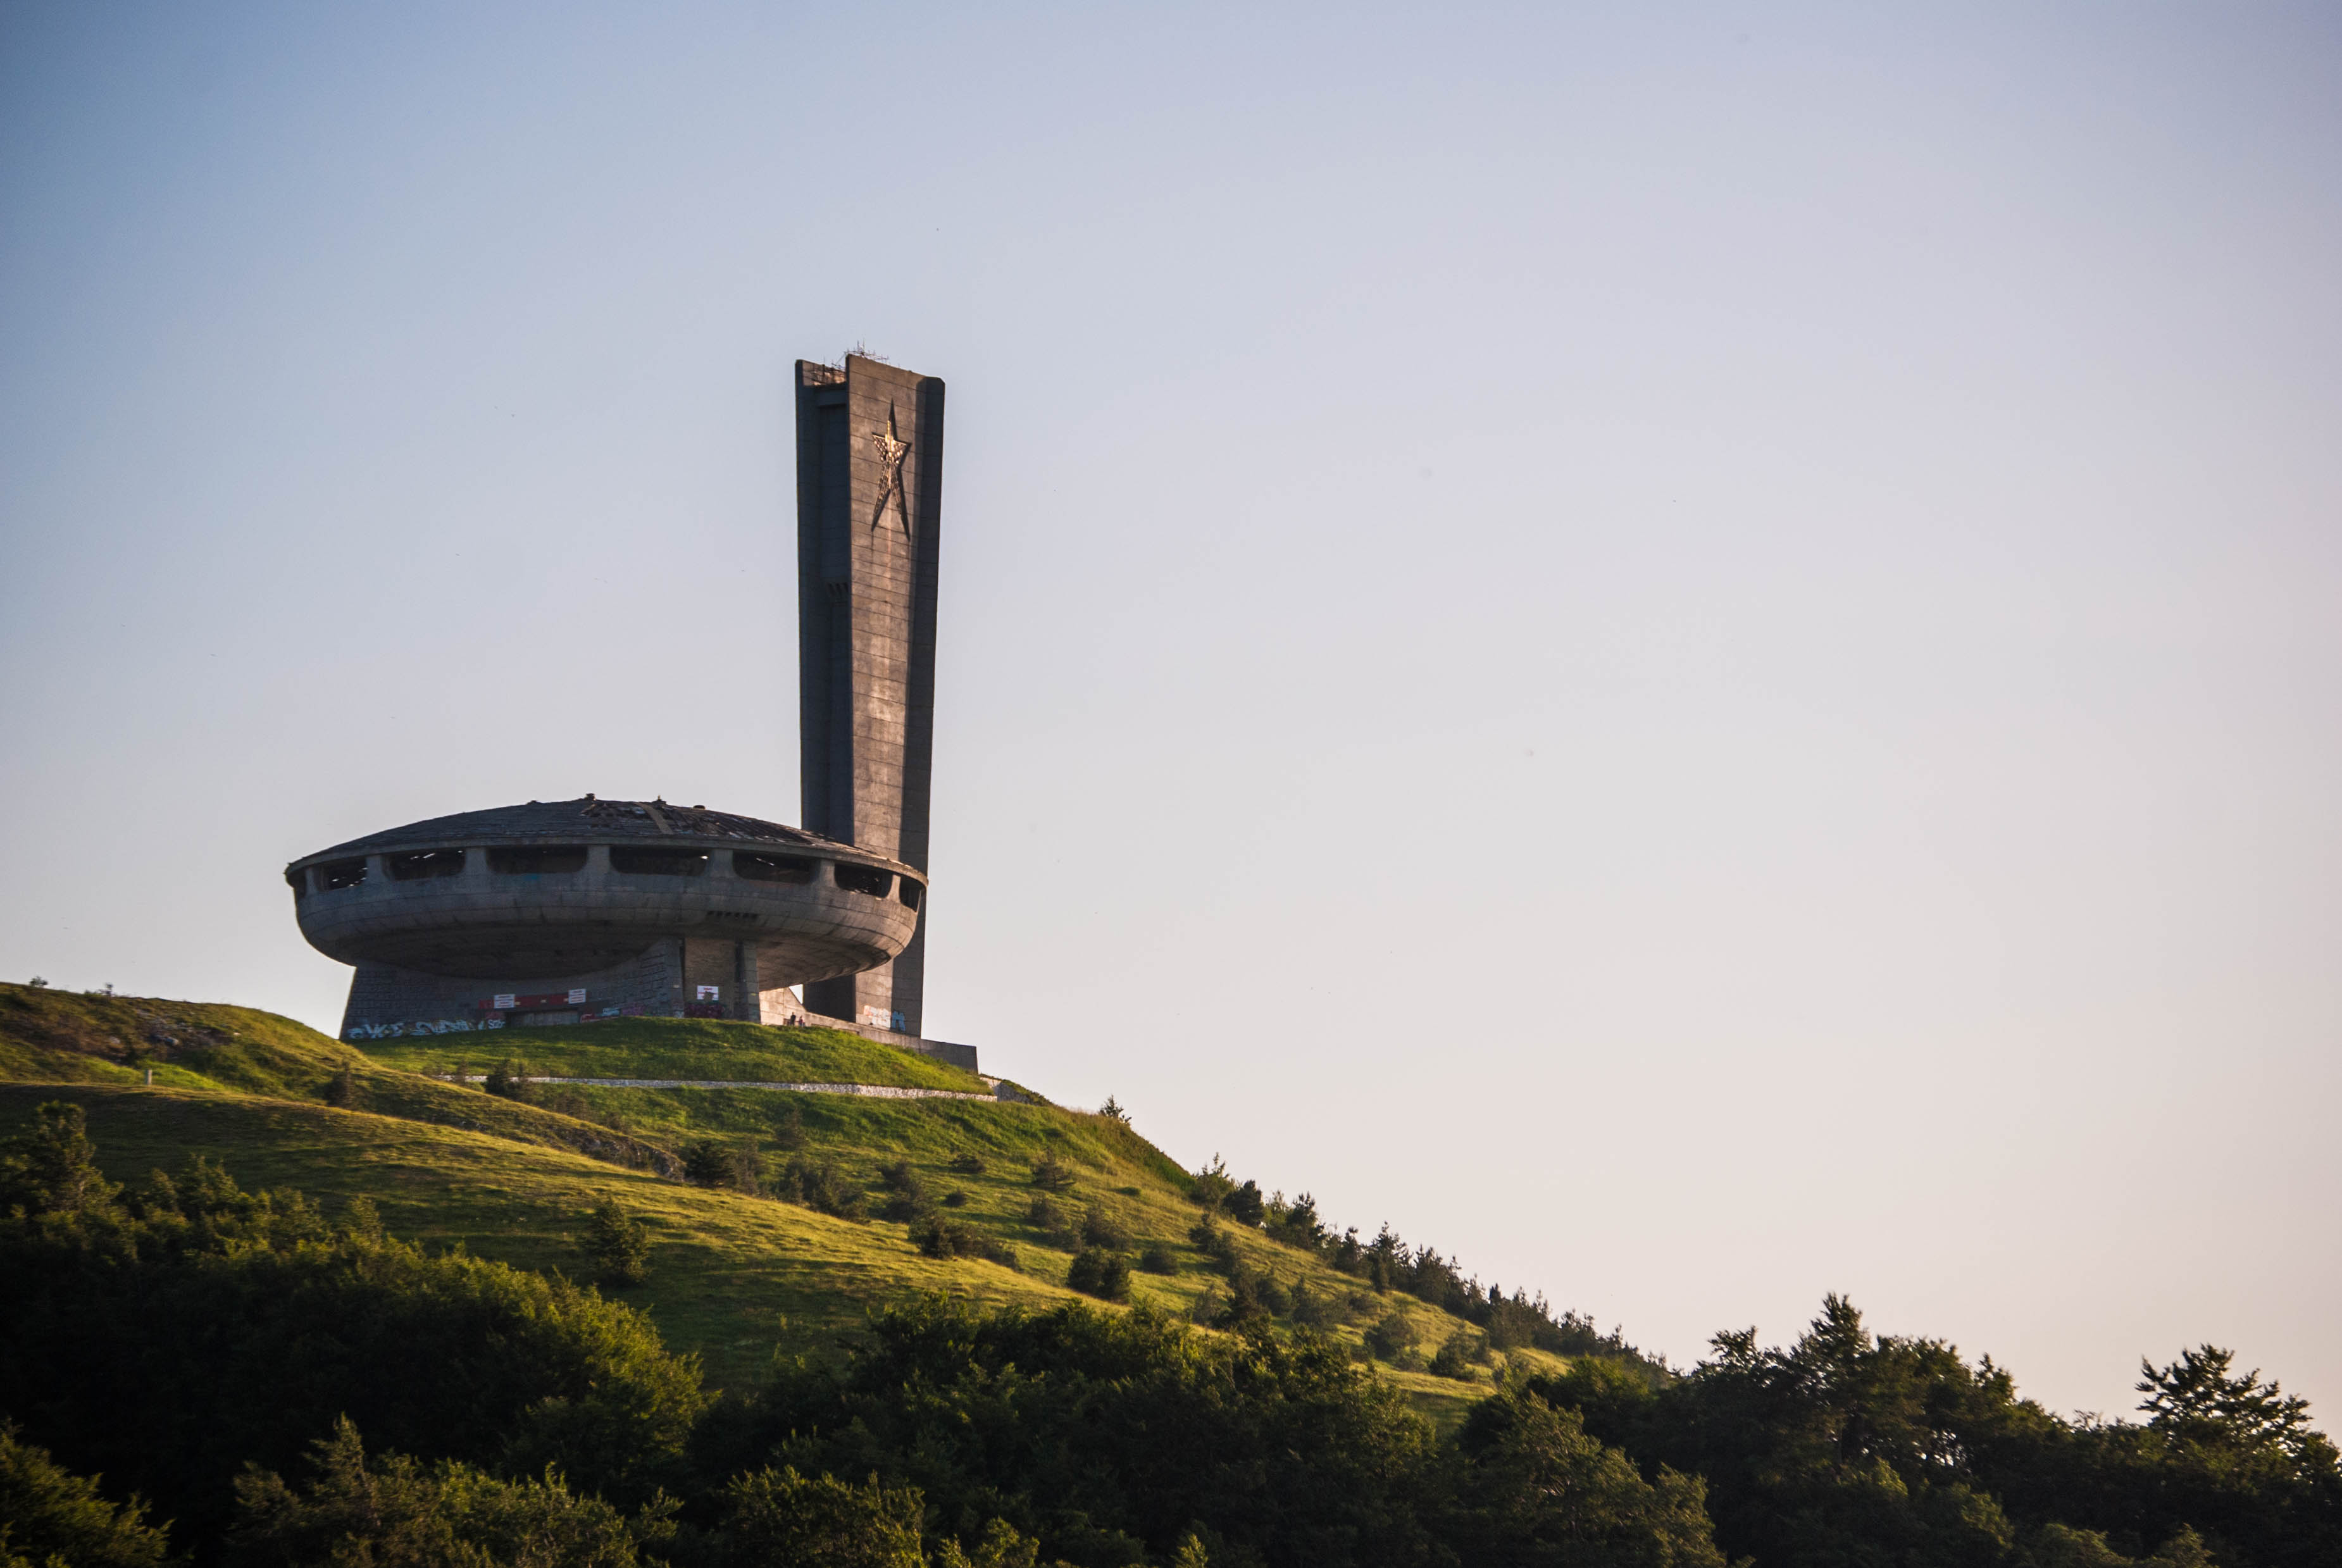 A Futuristic Monument To Bulgaria's Communist Past